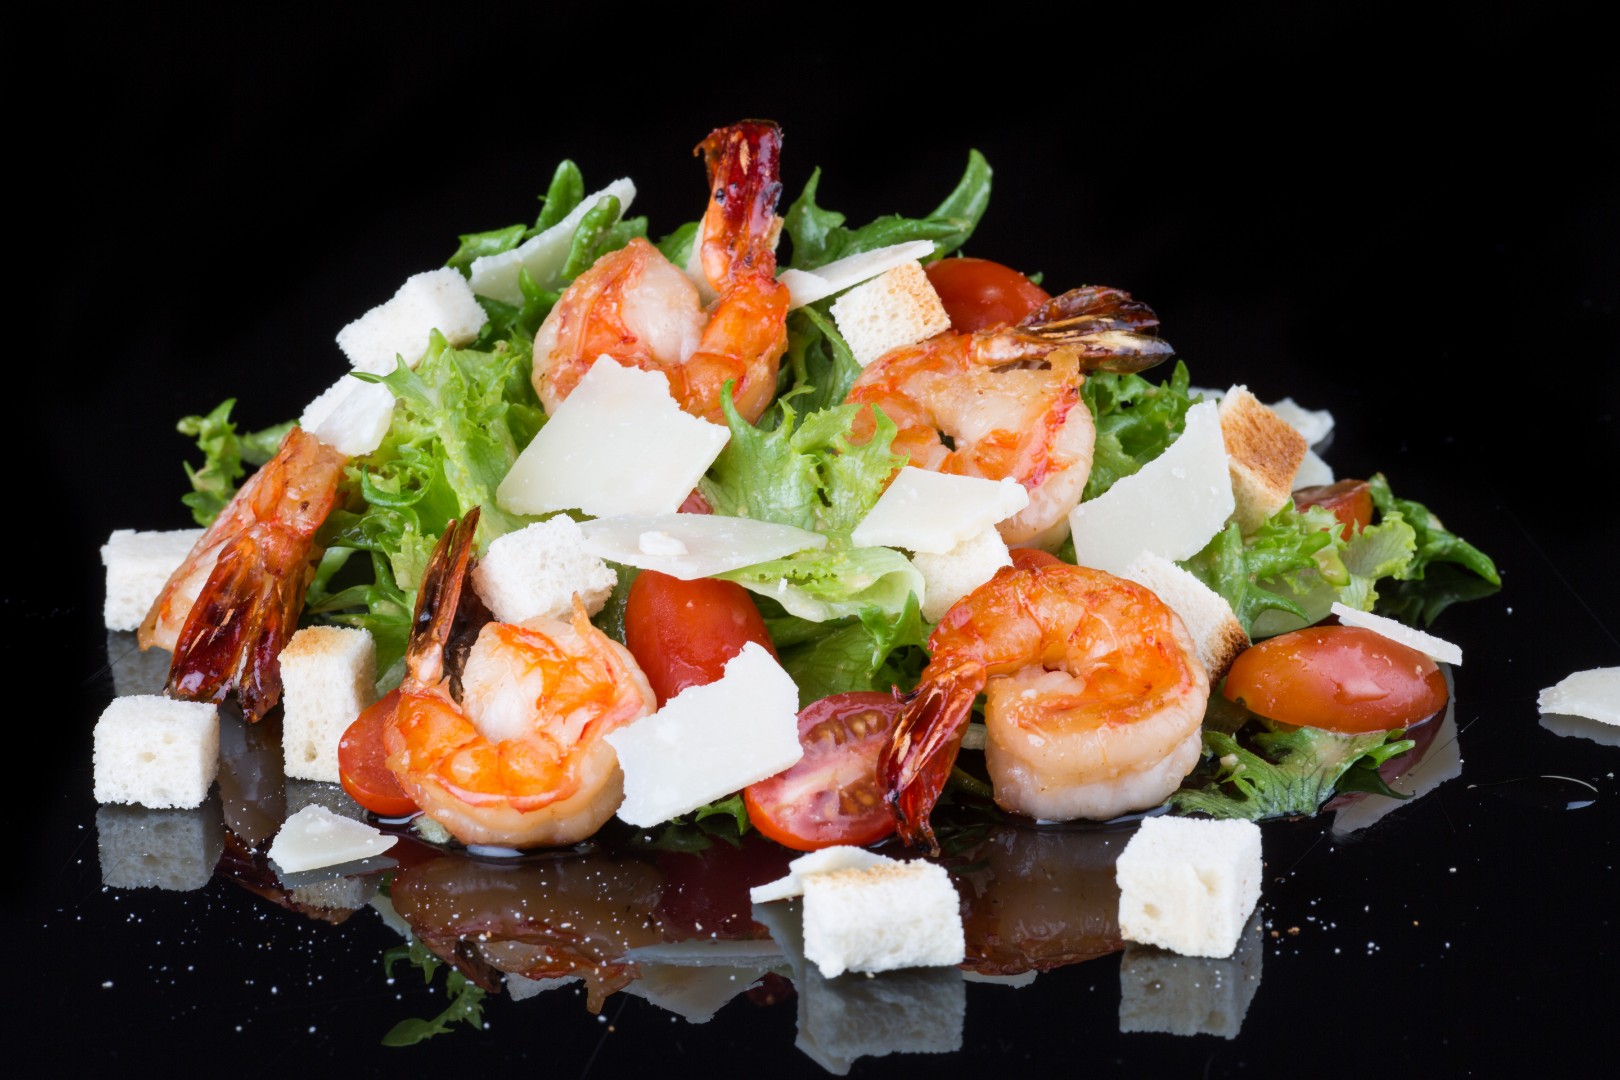 Caesar salad shrimps